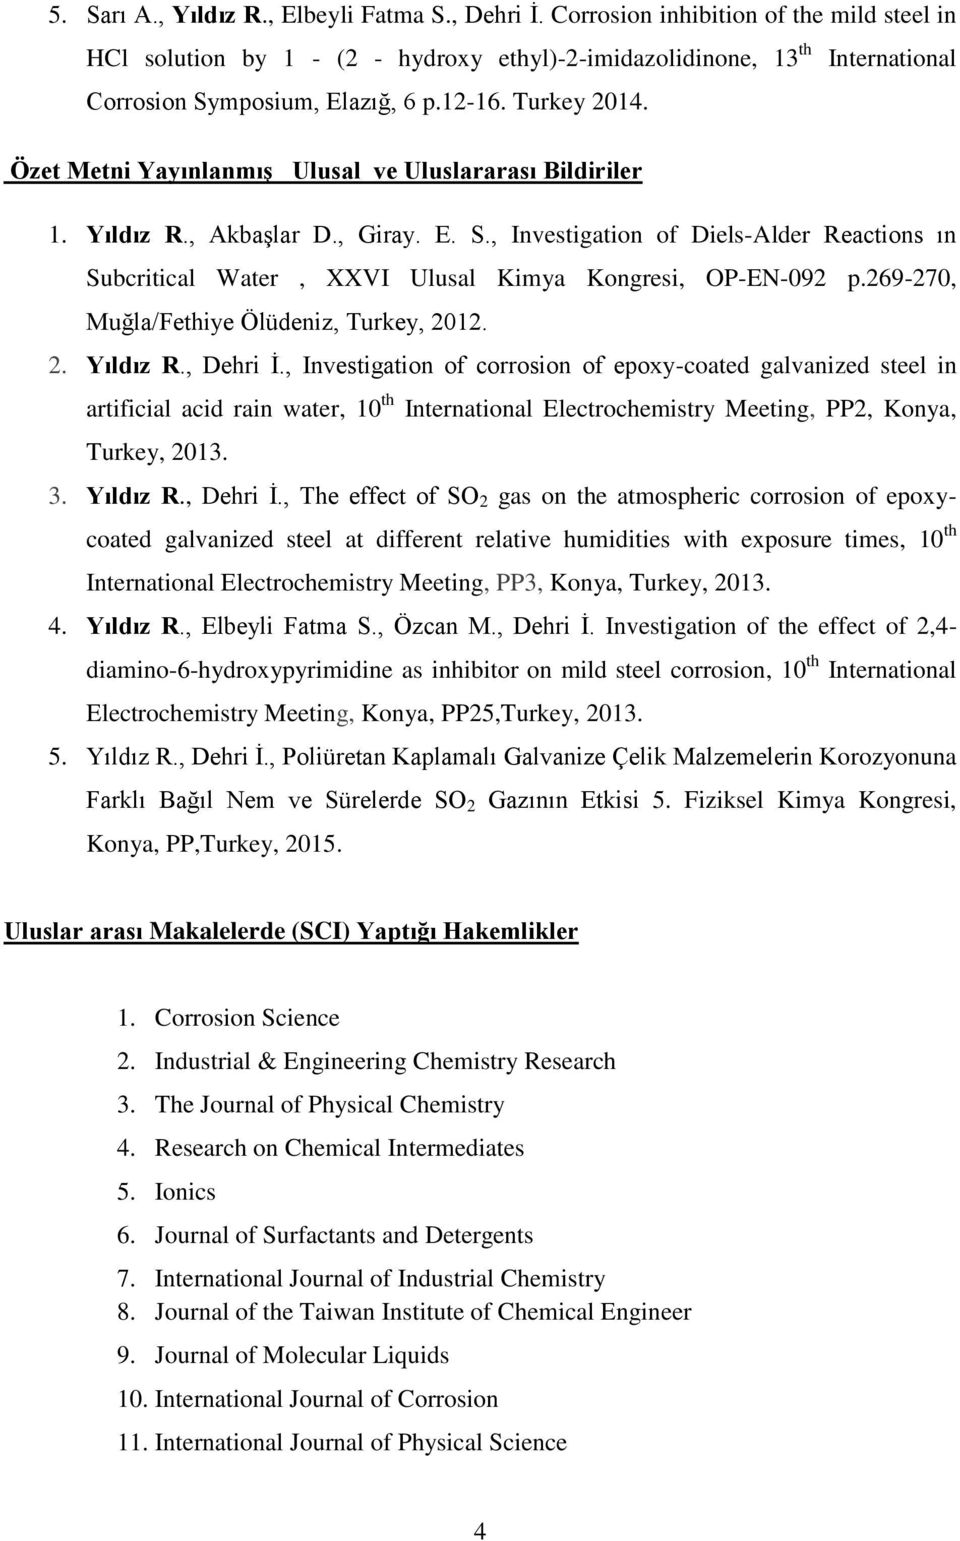 Özet Metni Yayınlanmış Ulusal ve Uluslararası Bildiriler 1. Yıldız R., Akbaşlar D., Giray. E. S., Investigation of Diels-Alder Reactions ın Subcritical Water, XXVI Ulusal Kimya Kongresi, OP-EN-092 p.